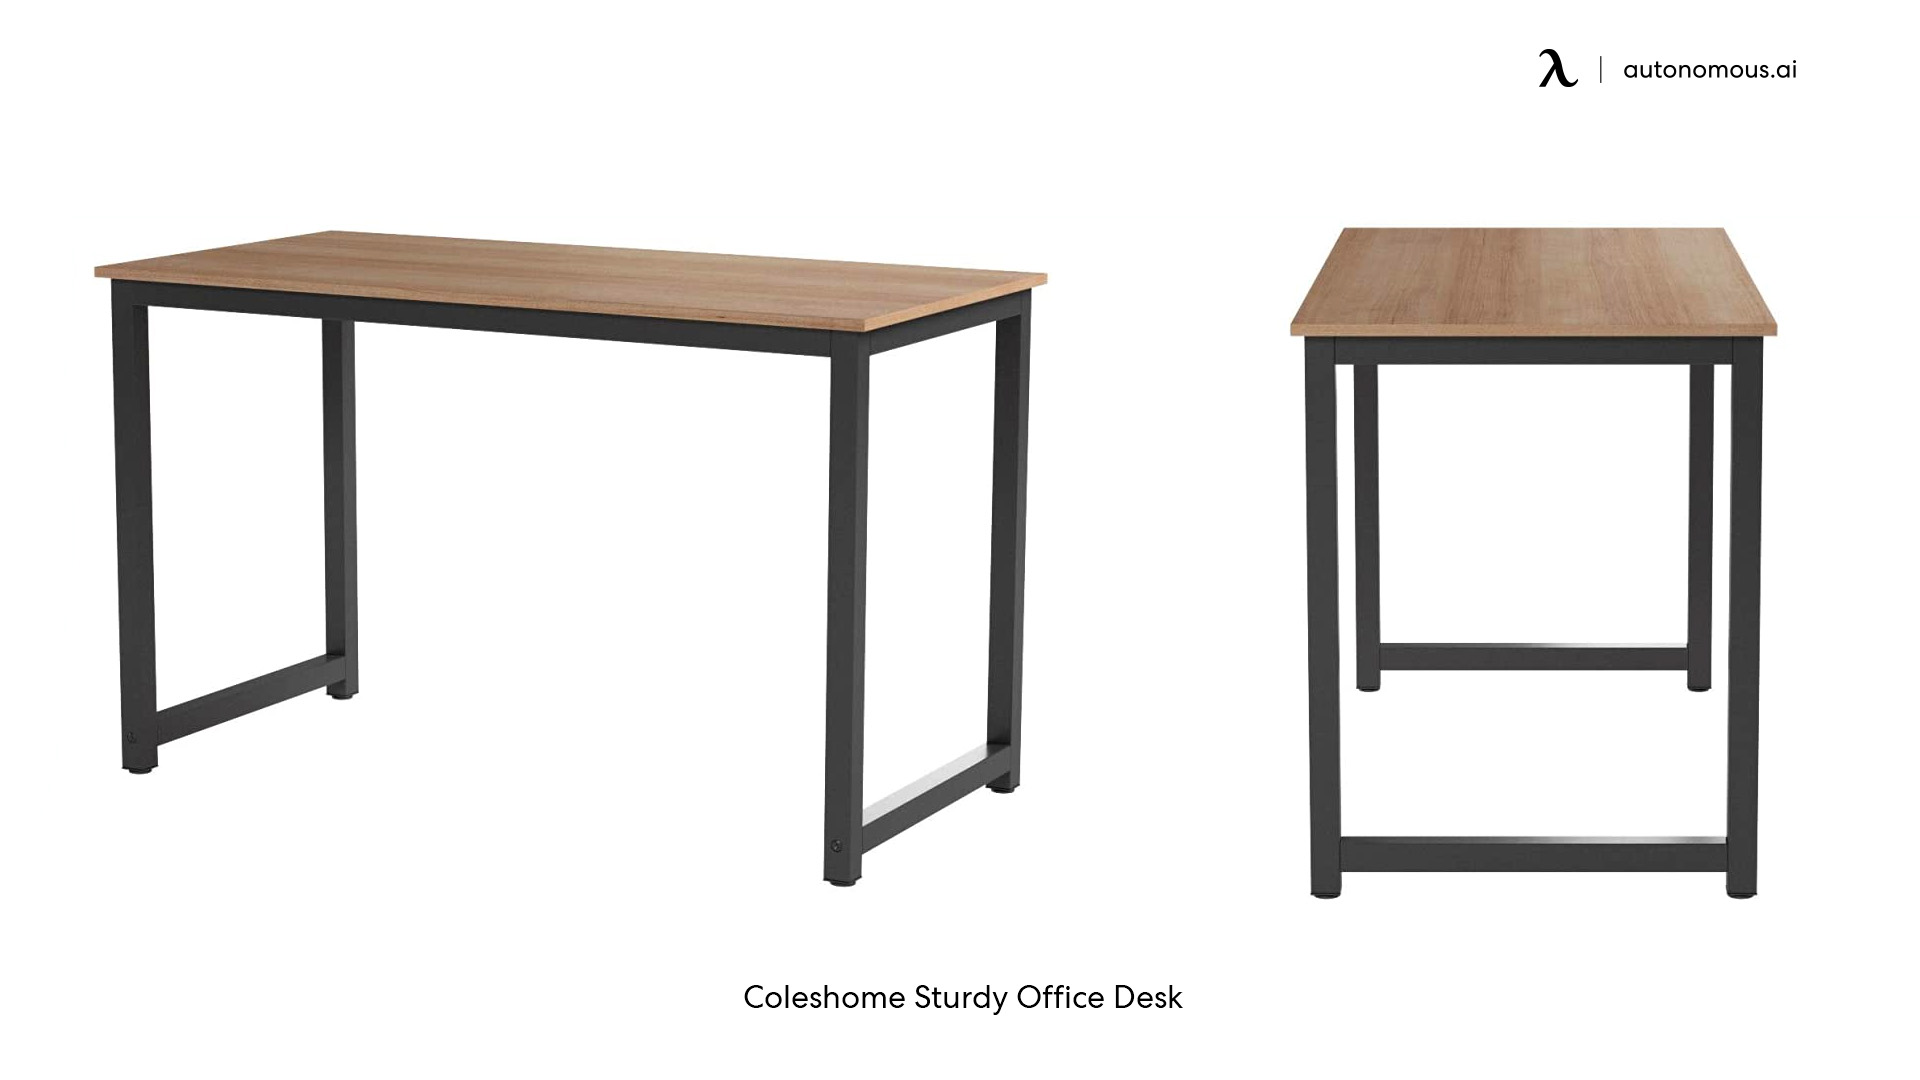 Coleshome desk size for 2 monitors